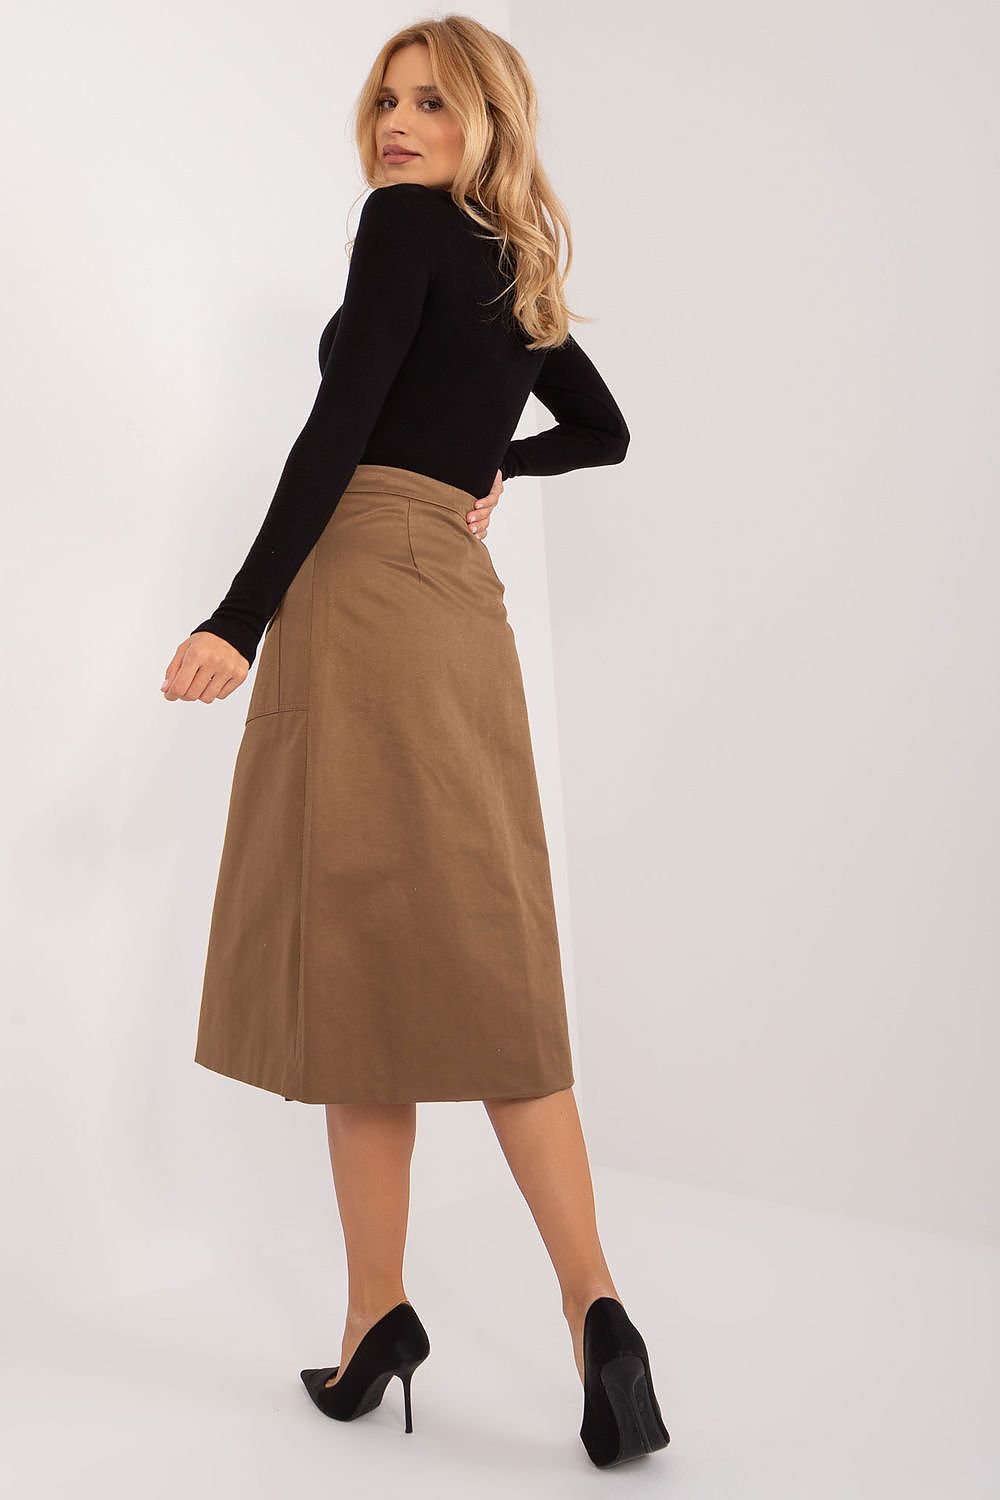 Skirt model 193270 Factory Price